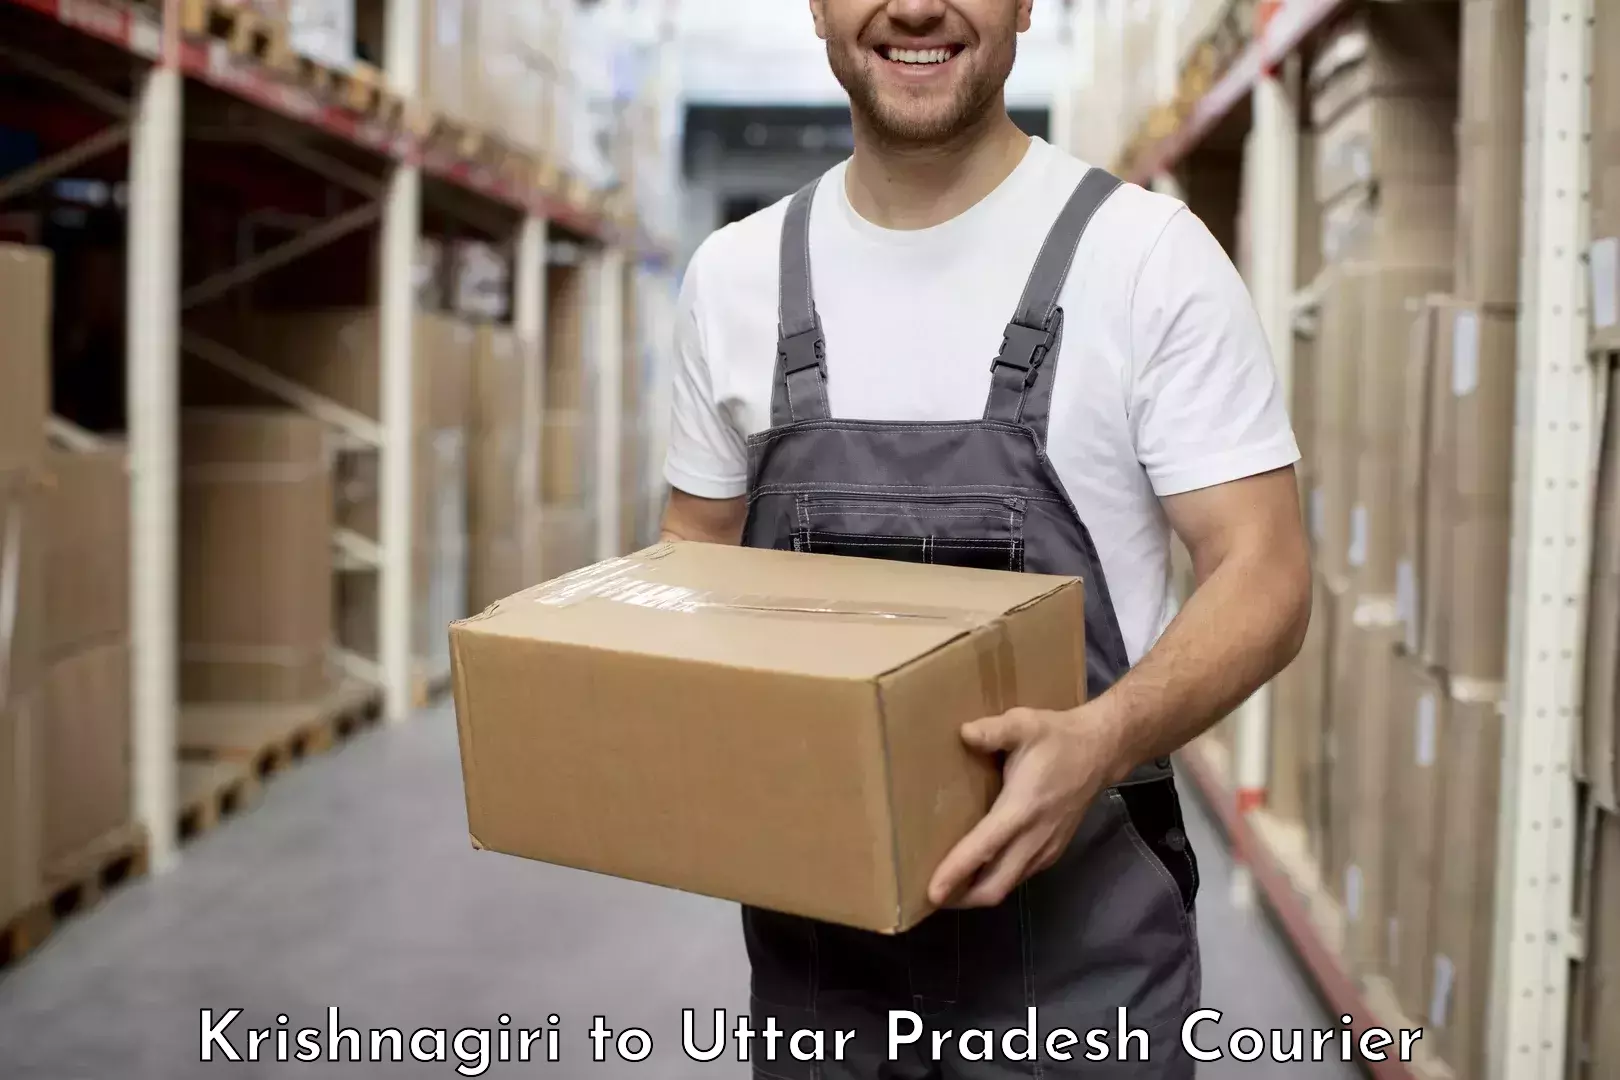 Next-generation courier services Krishnagiri to Gajraula